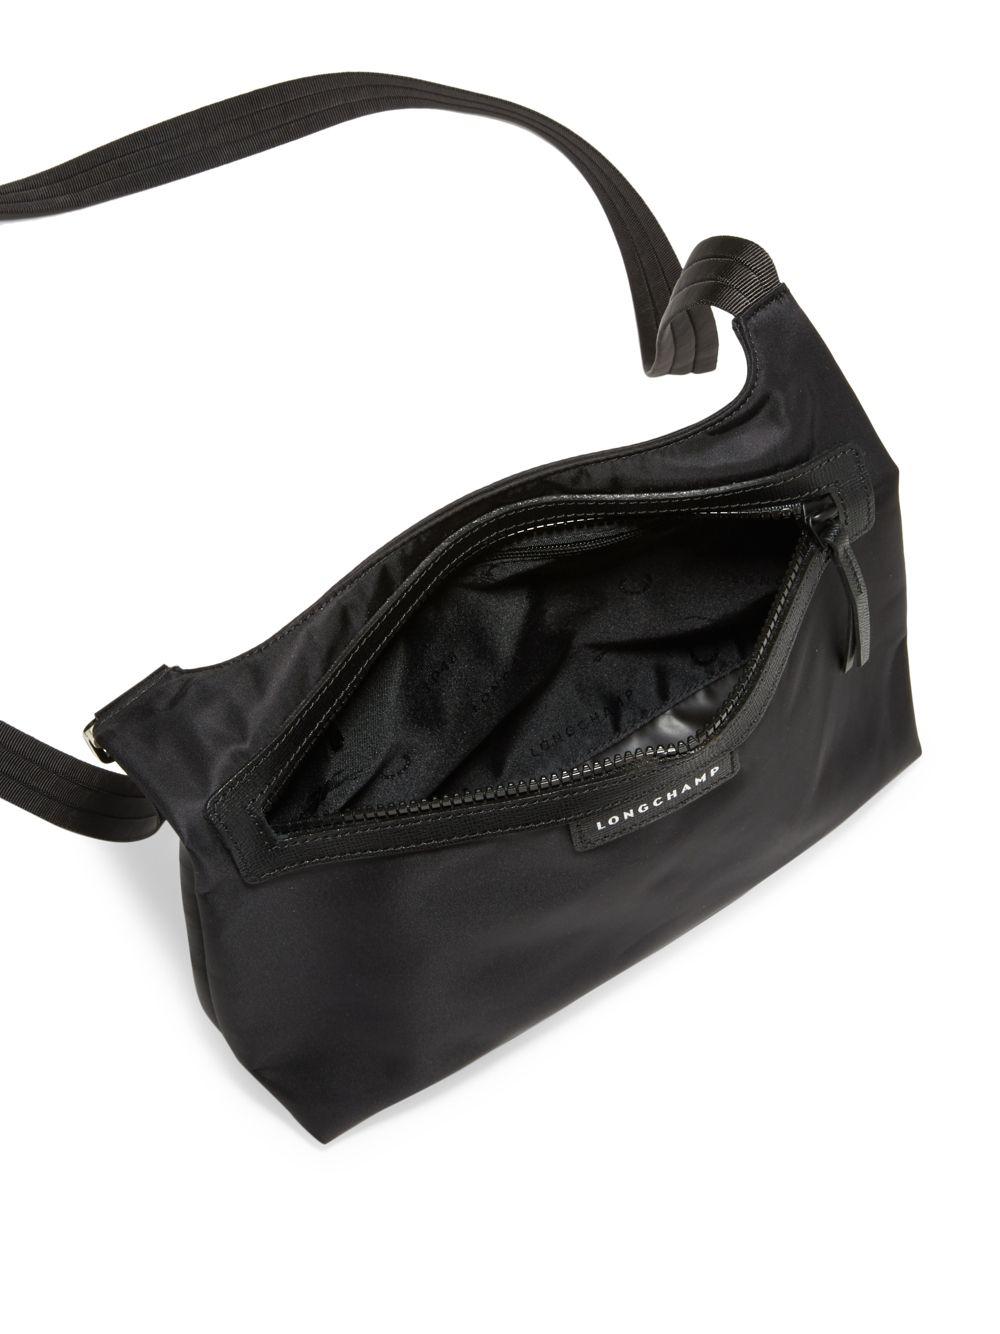 Longchamp Nylon Shoulder Hobo Handbag - Le Pliage (Black)